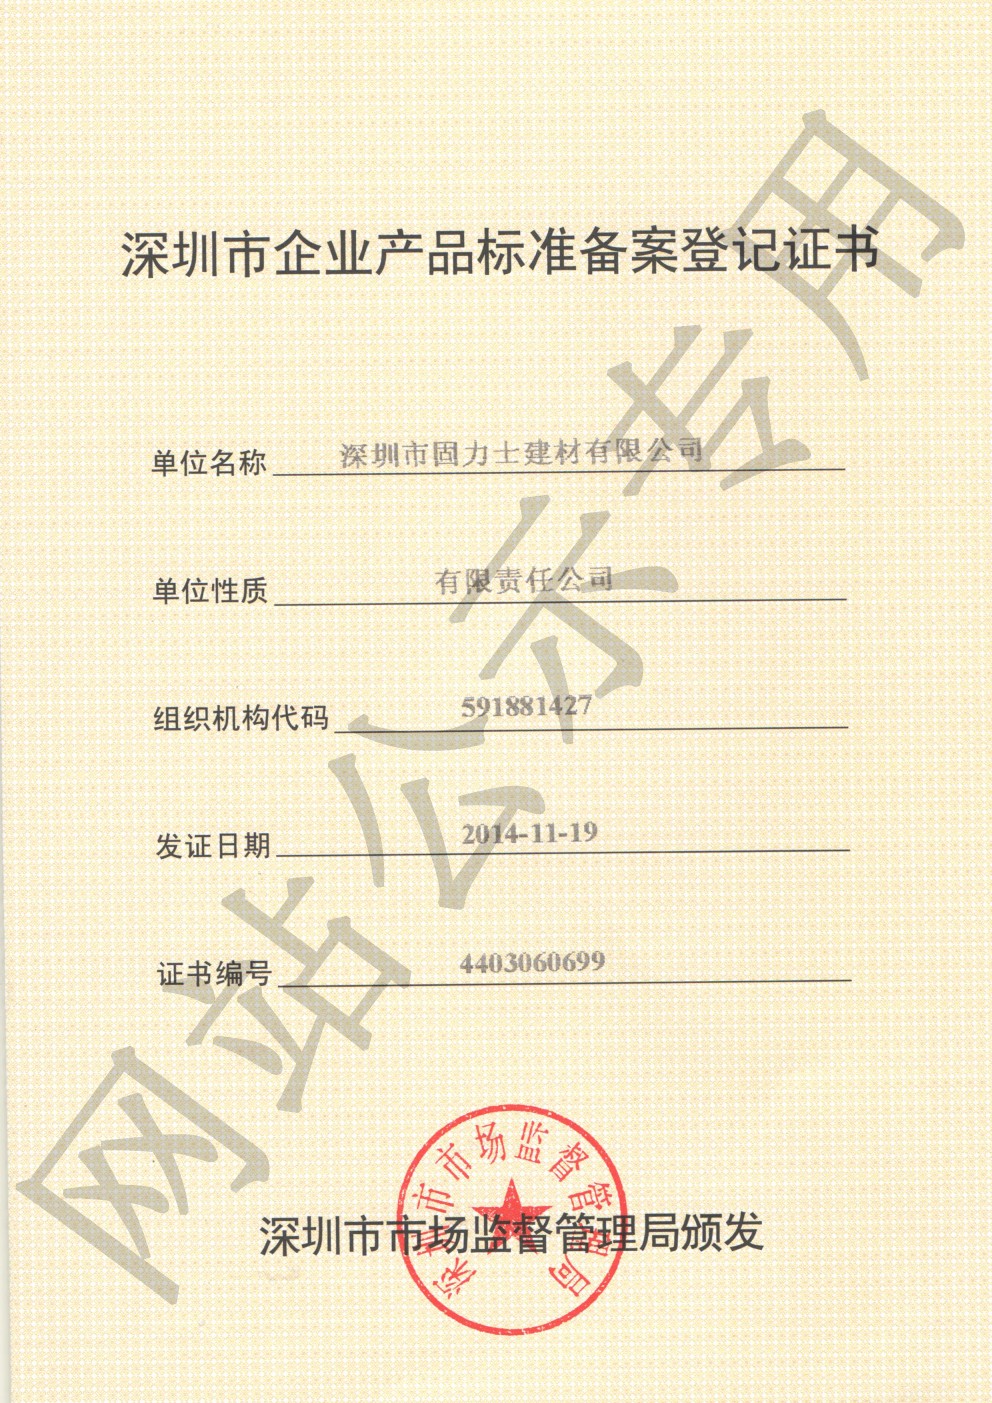 内蒙古企业产品标准登记证书